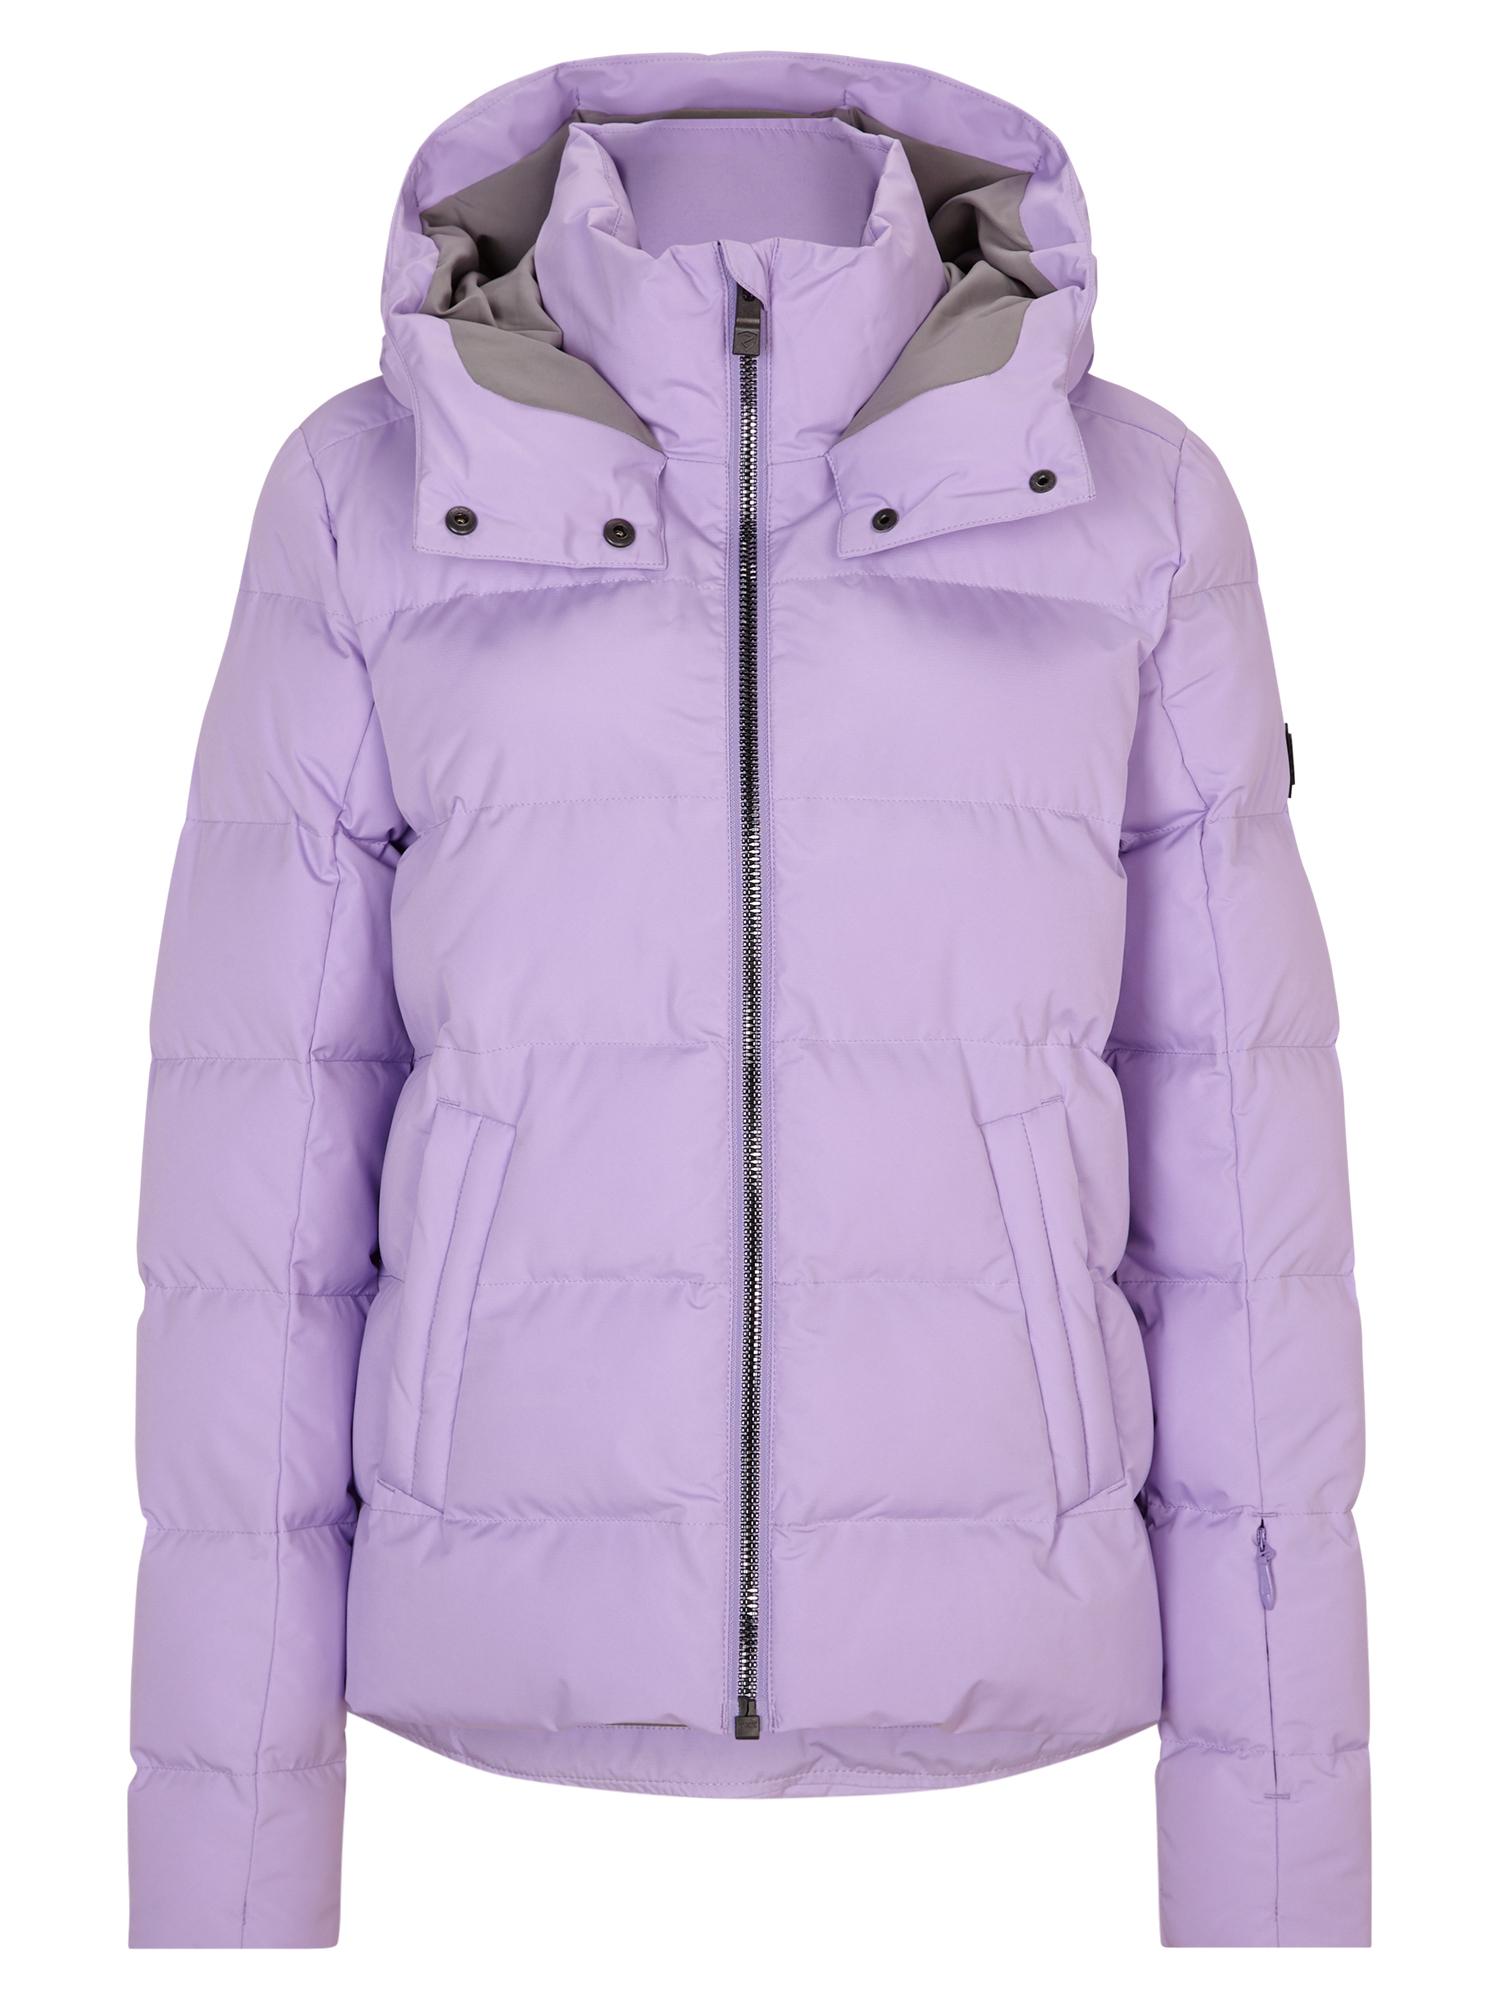 Shop kaufen von SportScheck Online sweet TUSJA Damen Skijacke Ziener im lilac